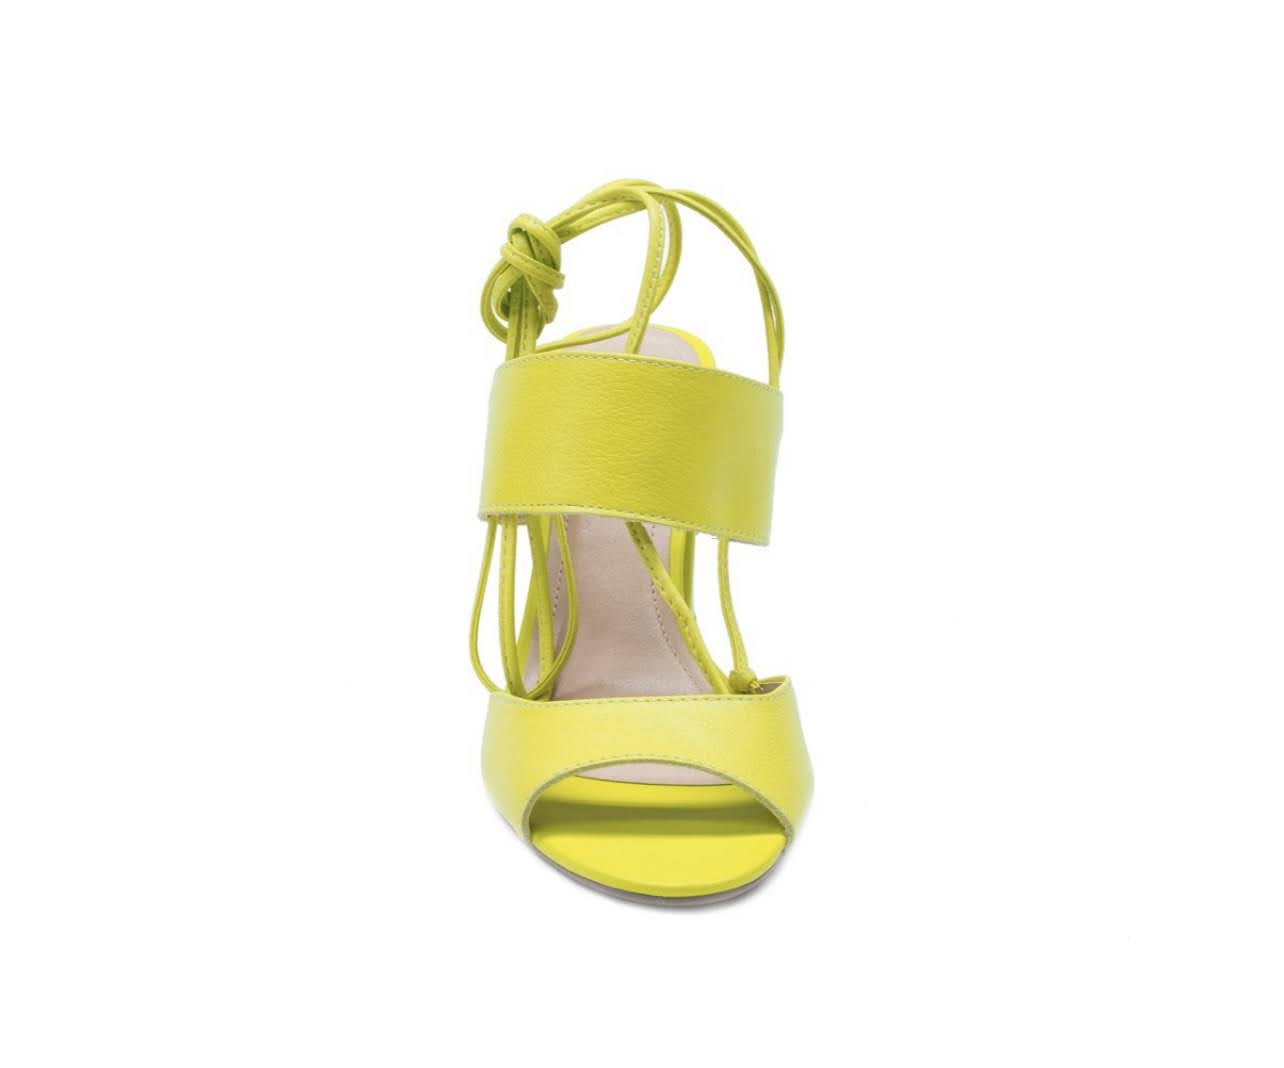 Lime Green Tie Up Leather Block Heel Sandals - Julia & Santos 